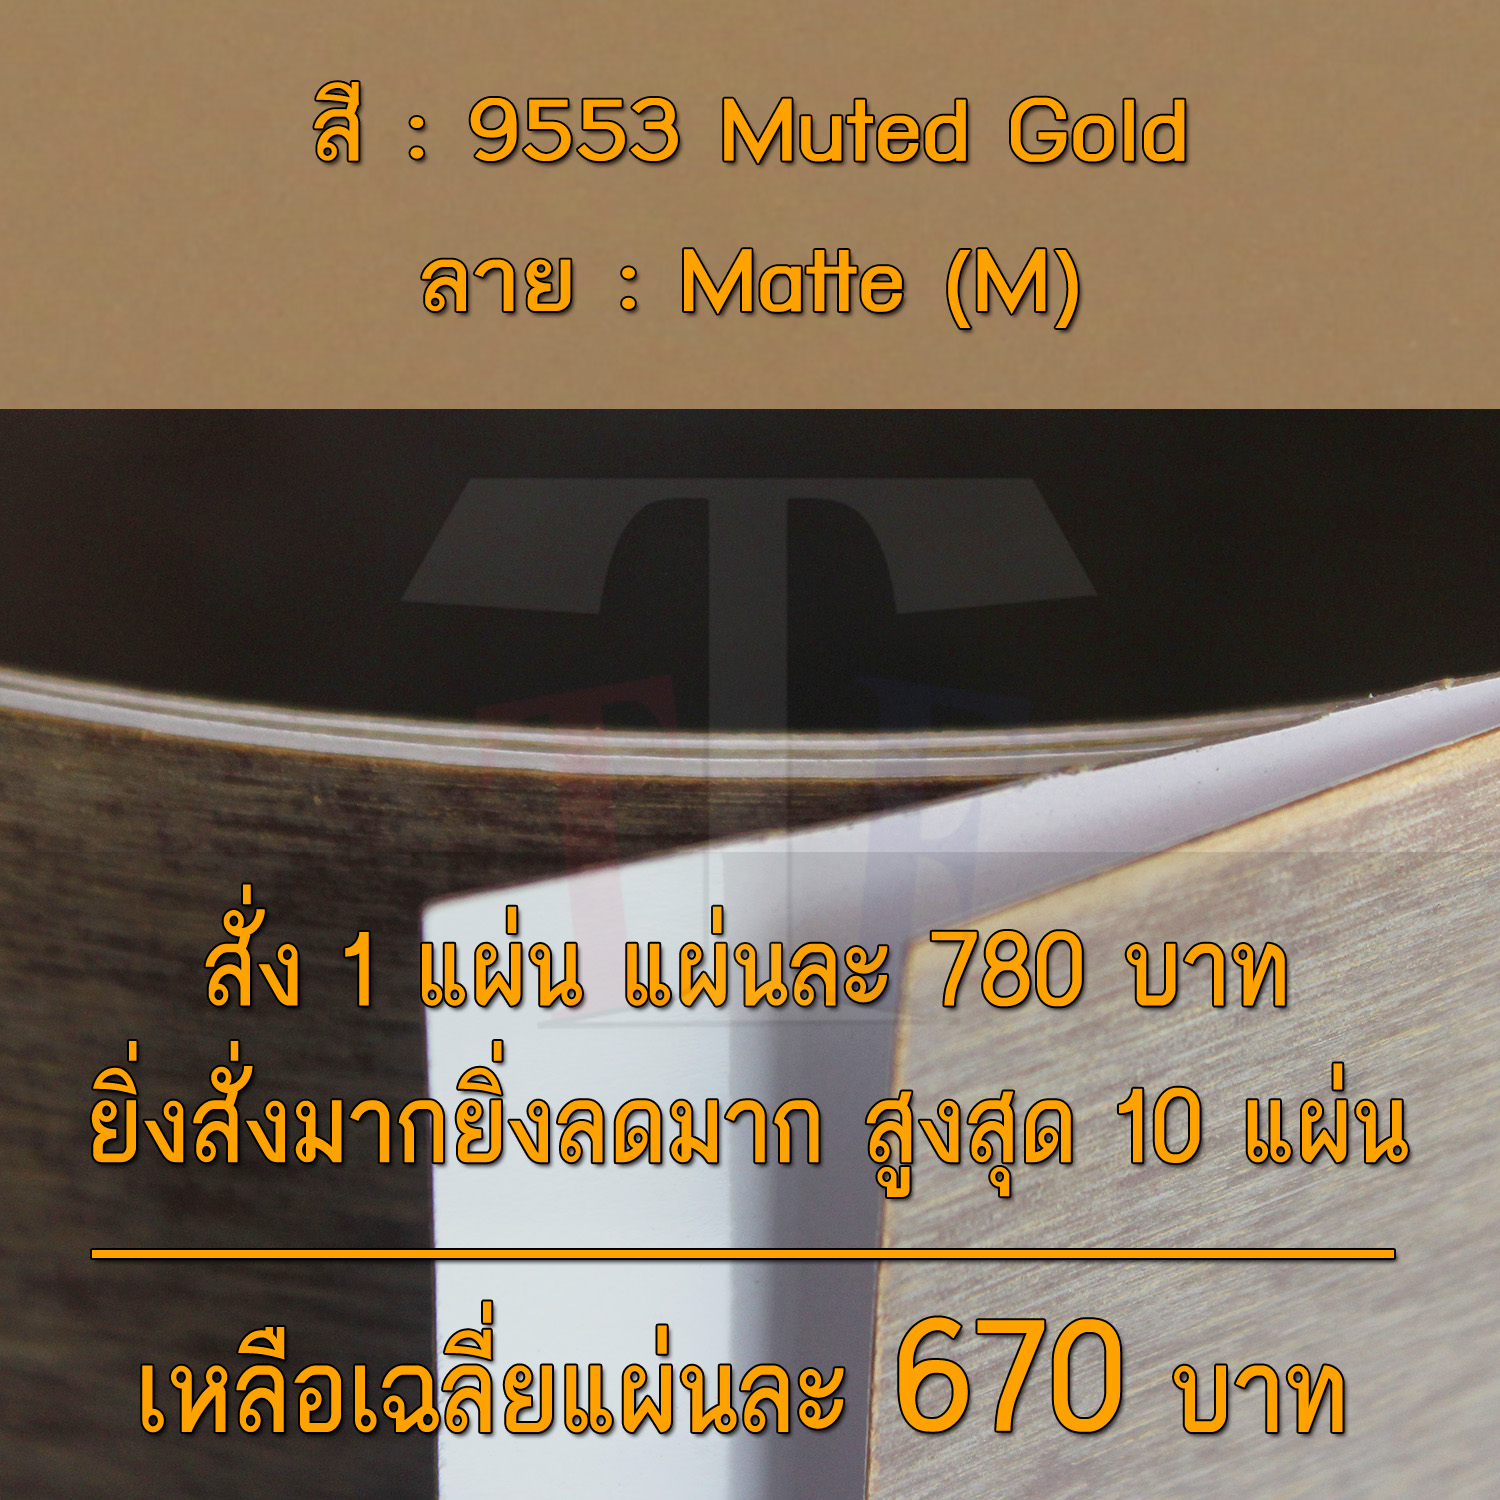 แผ่นโฟเมก้า แผ่นลามิเนต ยี่ห้อ TD Board สีทอง รหัส 9553 Muted Gold พื้นผิวลาย Matte (M) ขนาด 1220 x 2440 มม. หนา 0.70 มม. ใช้สำหรับงานตกแต่งภายใน งานปิดผิวเฟอร์นิเจอร์ ผนัง และอื่นๆ เพื่อเพิ่มความสวยงาม formica laminate 9553M